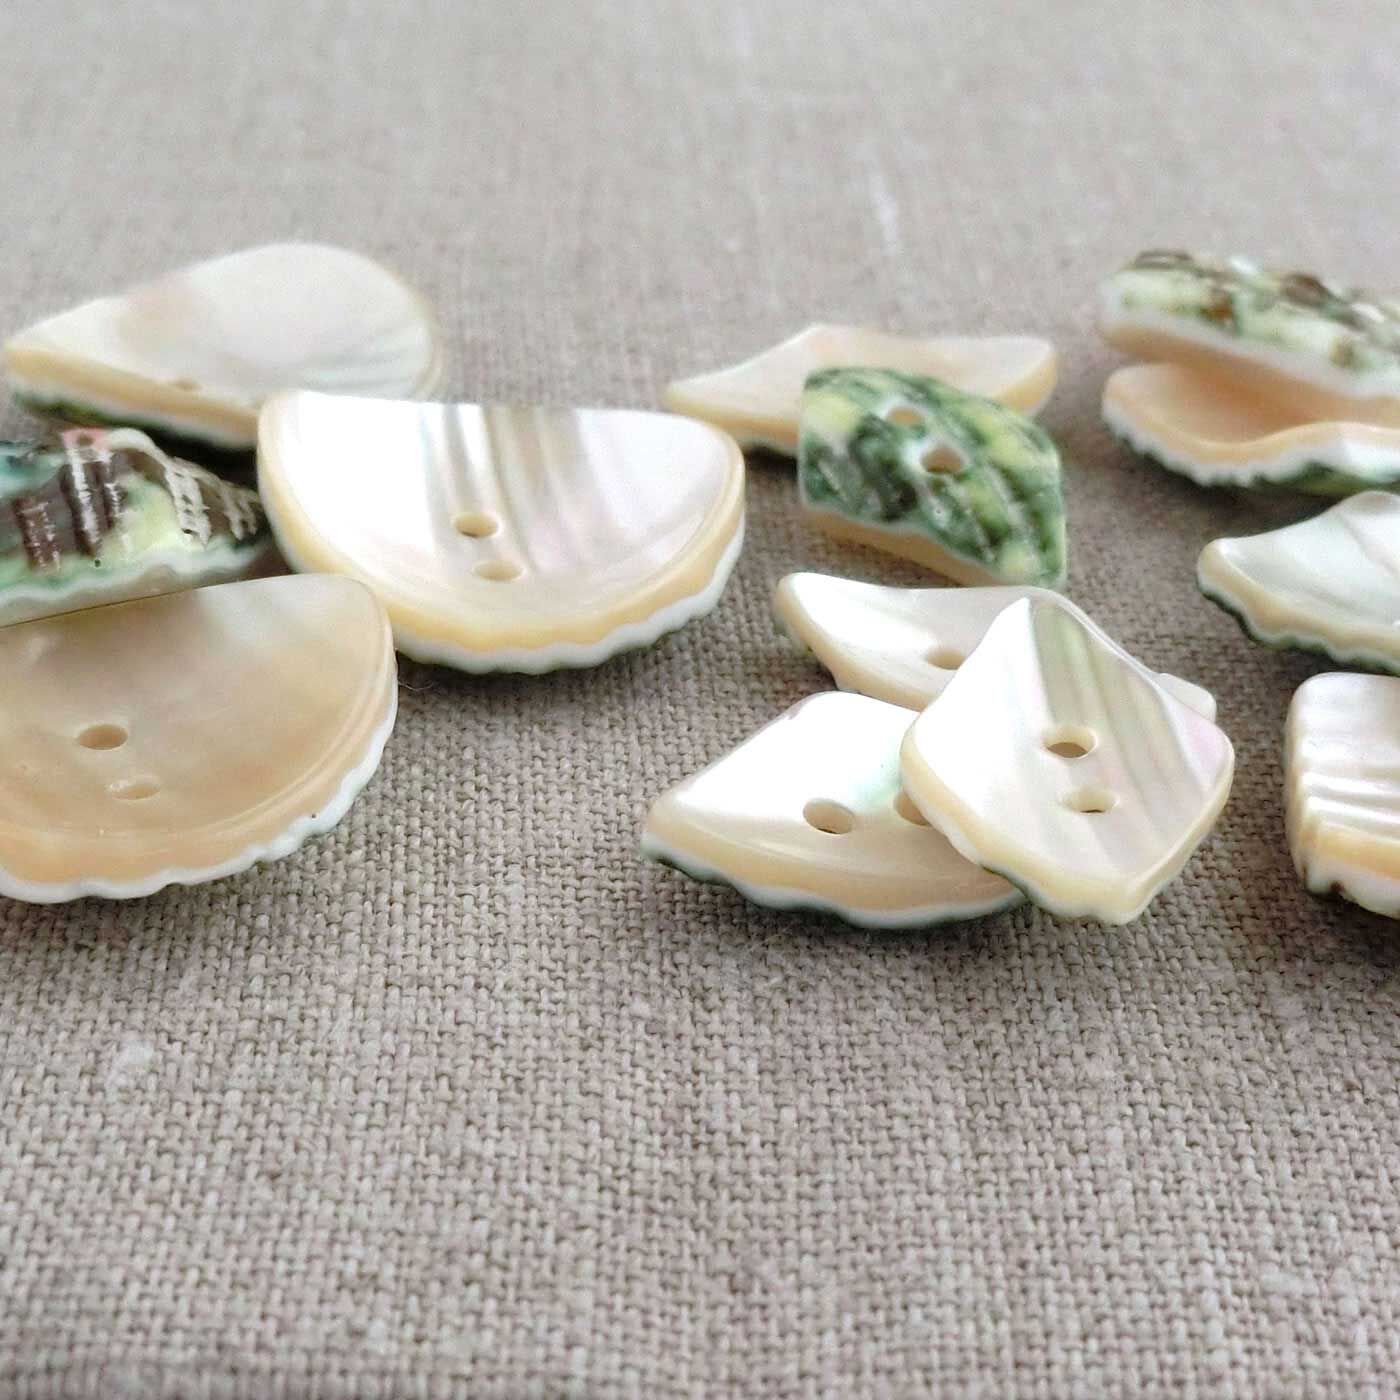 フェリシモの雑貨 Kraso|4Nov 奈良の貝ボタンセット〈玉貝1500〉|不揃いなしましまの線状紋も、磨かれてツヤツヤできれい。裏もカワイイ……。